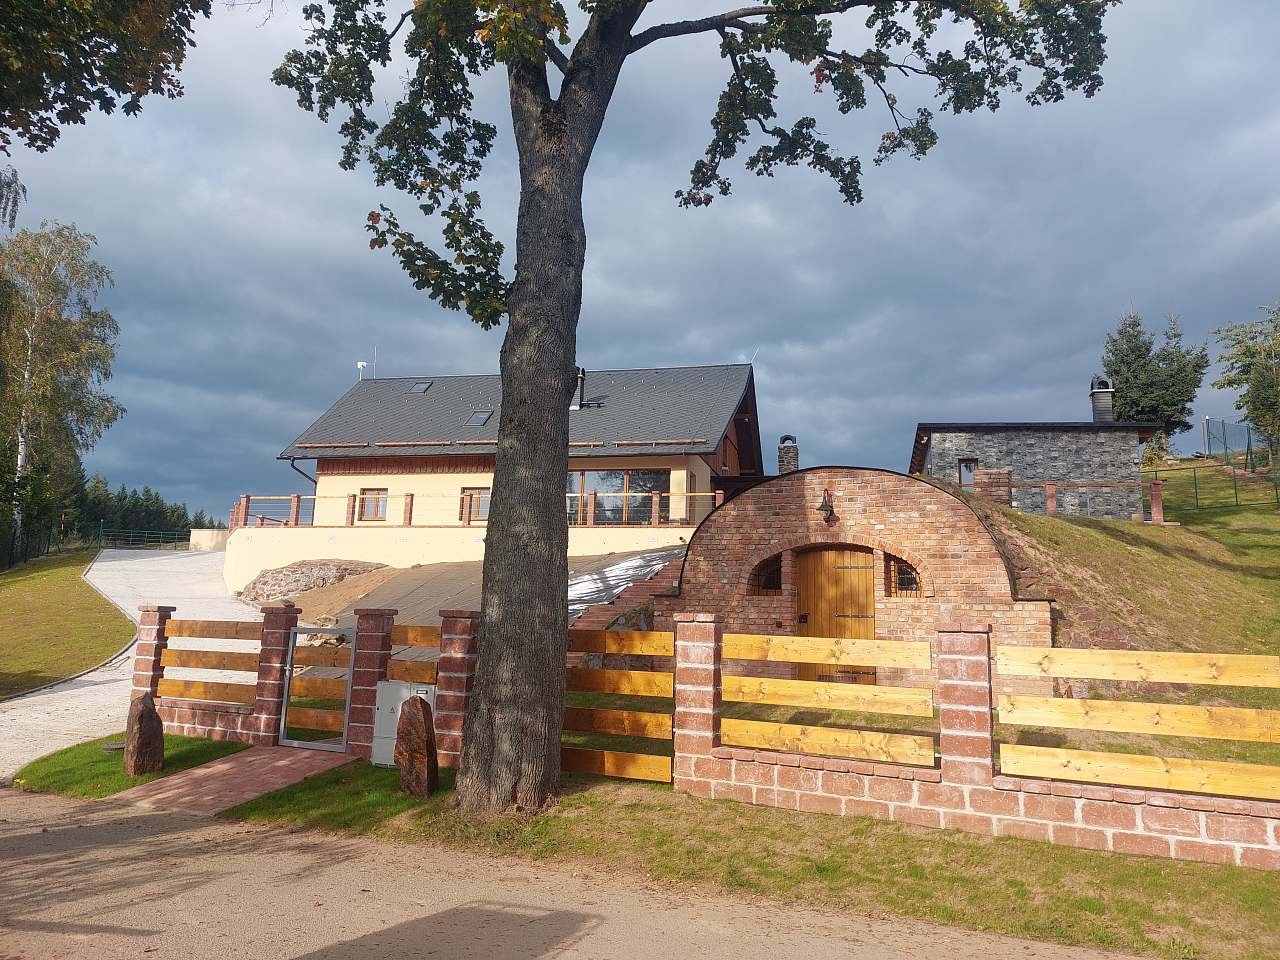 Stanovník cottage with Wellness and wine cellar for rent Těchonín - Stanovník